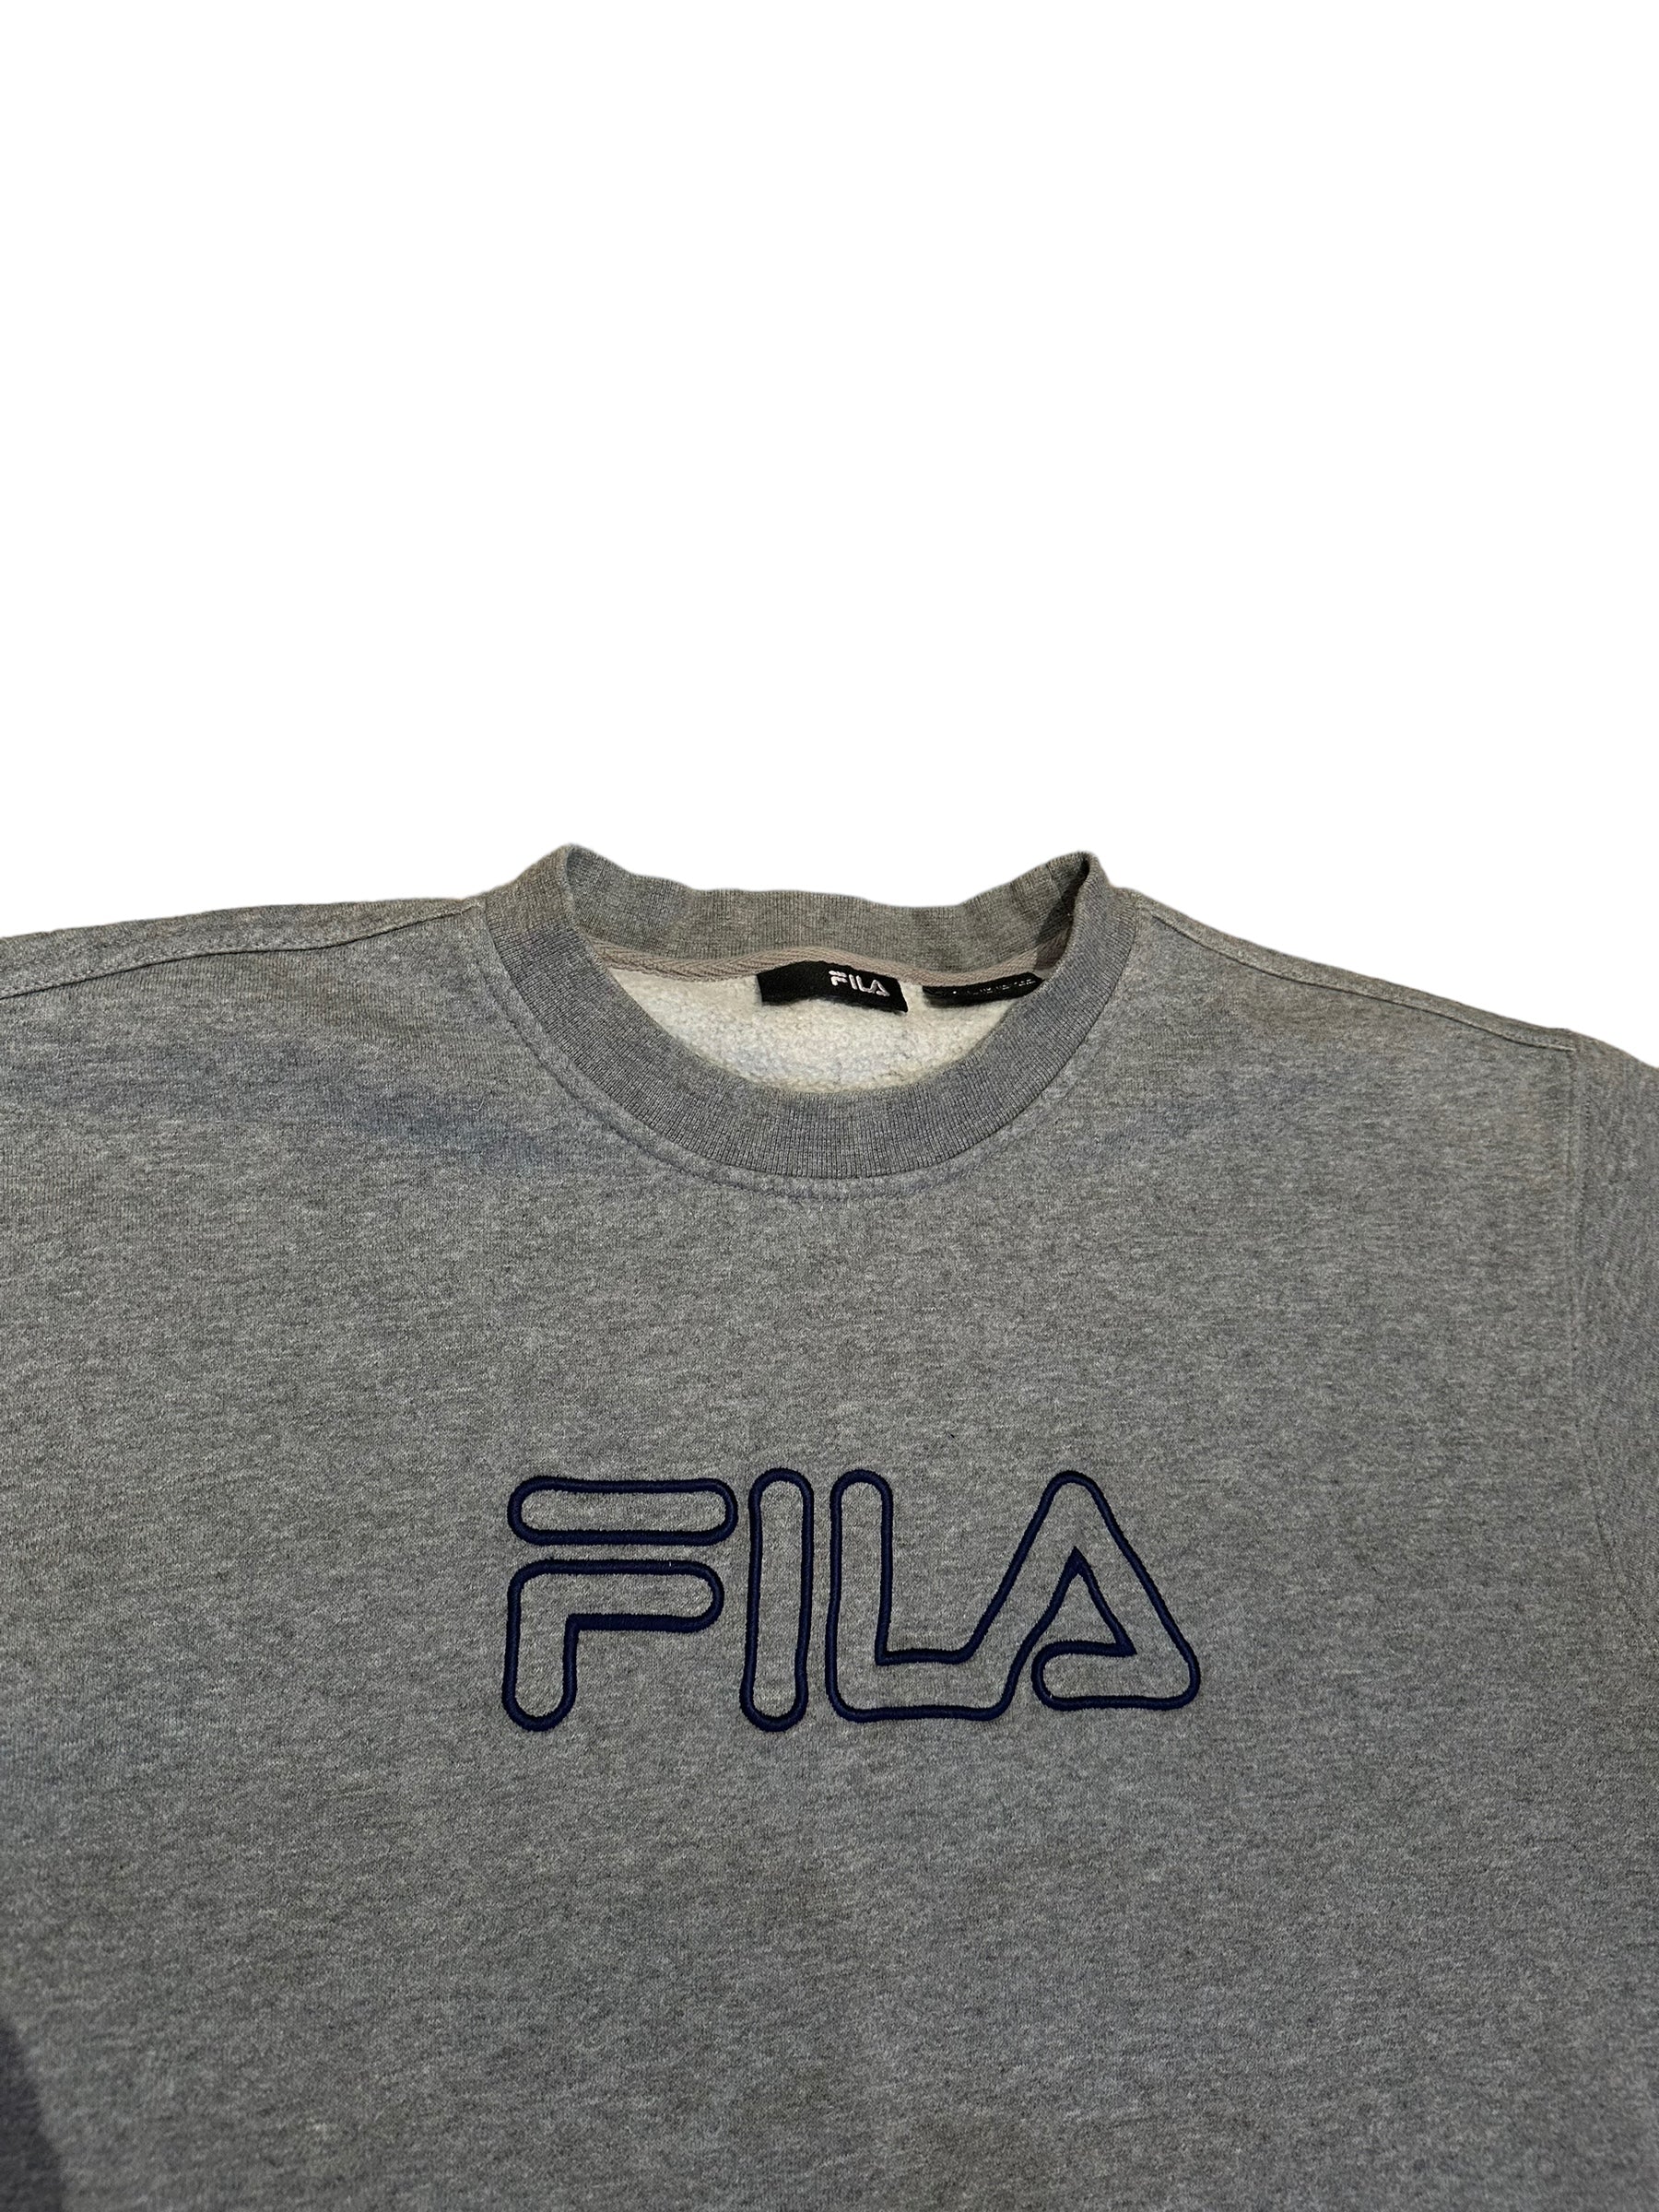 Vintage FILA sweatshirt M